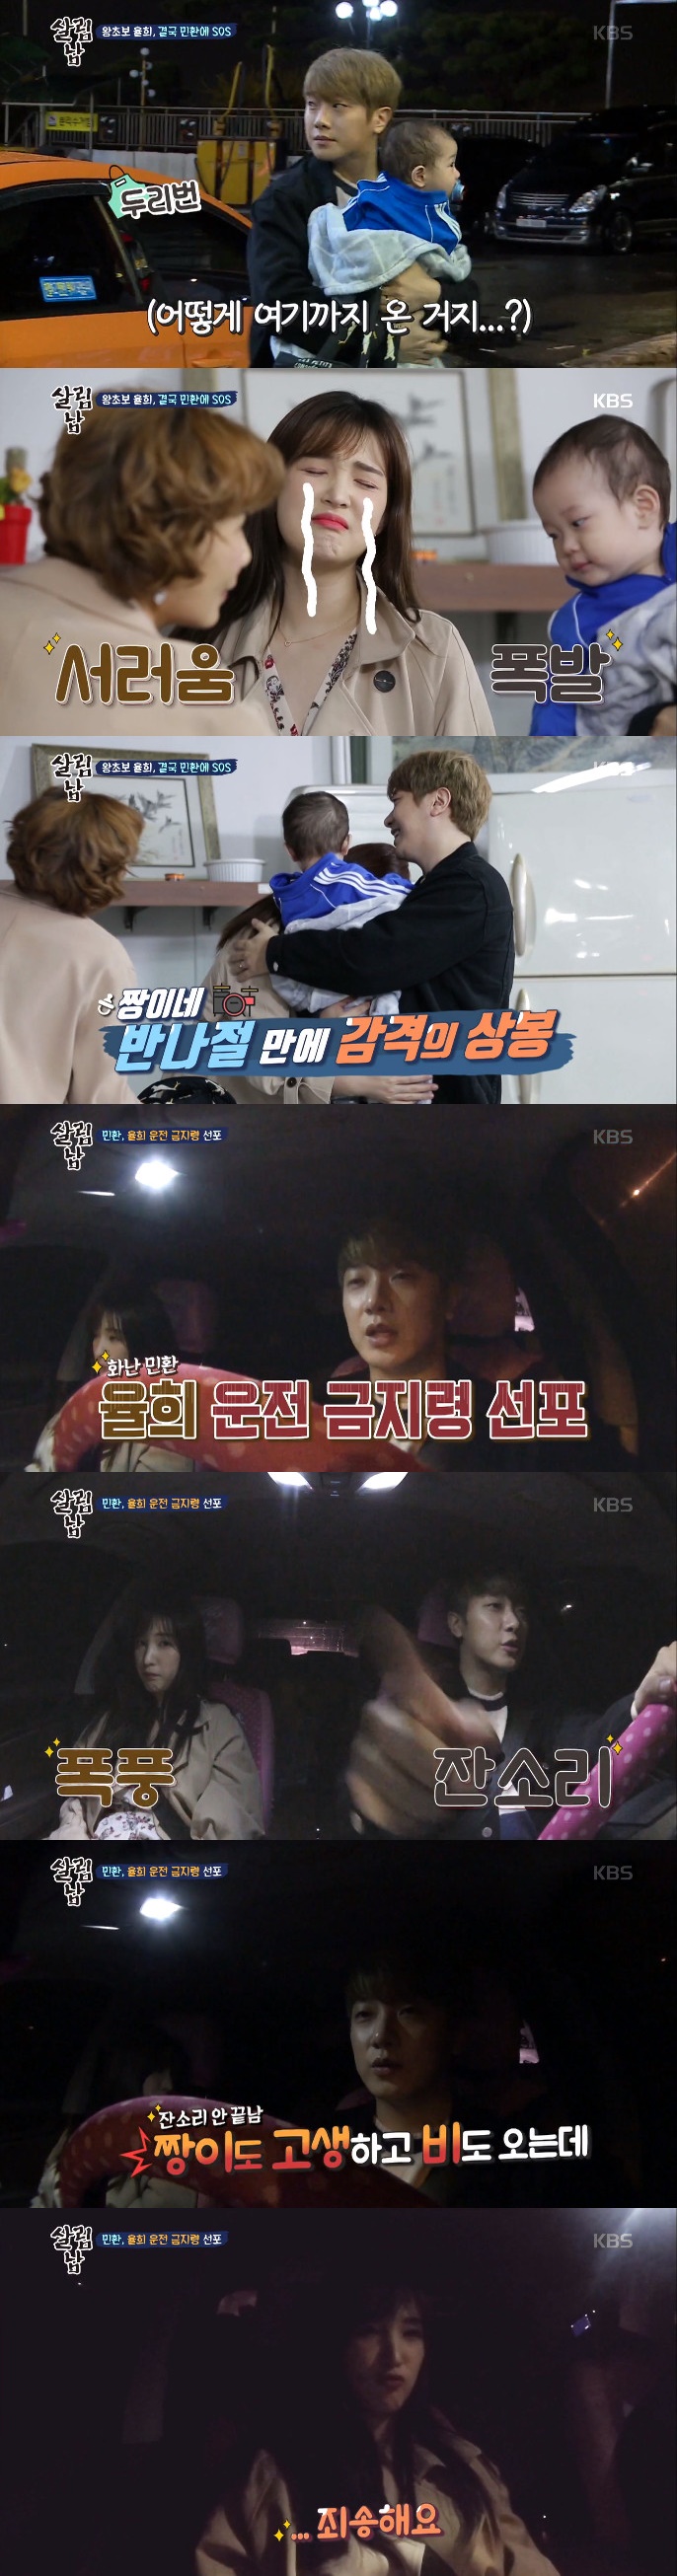 ‘살림하는 남자들 시즌2(살림남)’ 방송화면 캡처